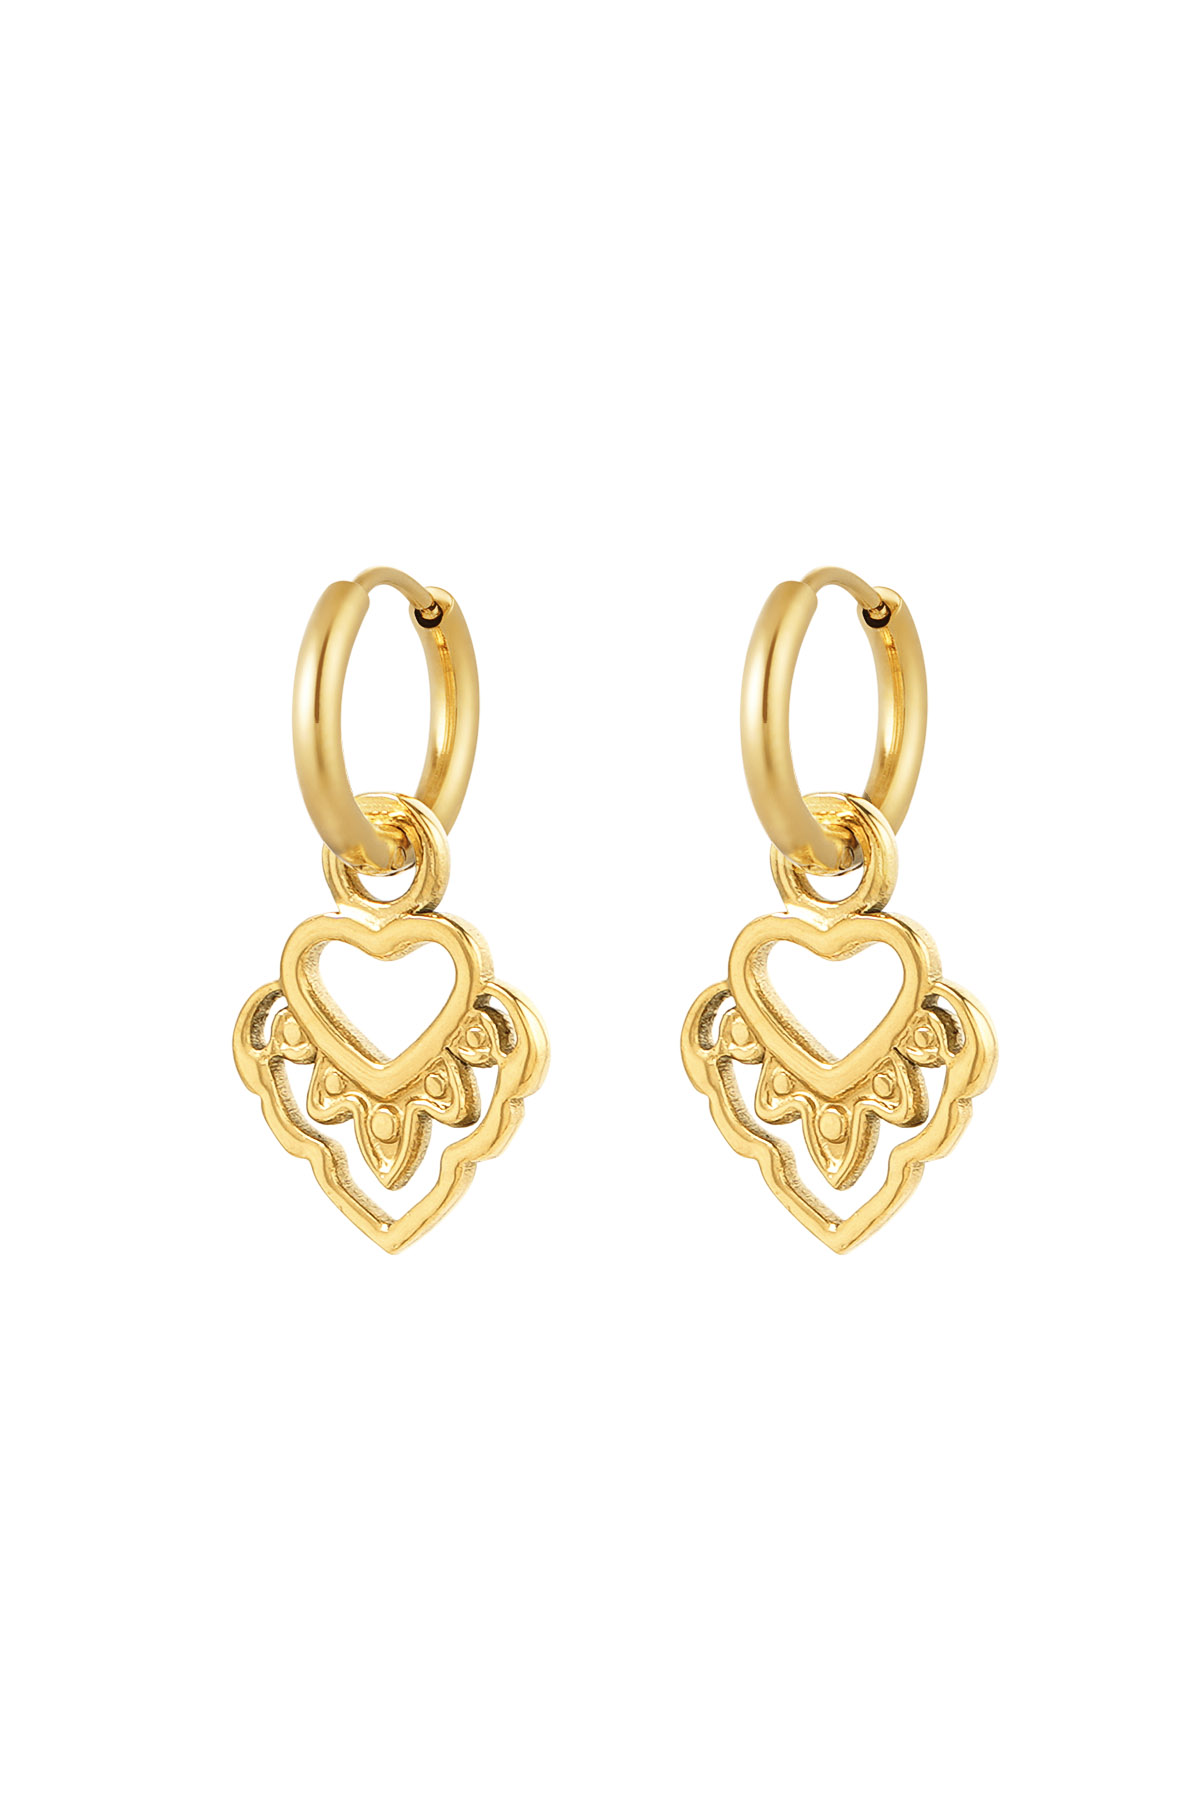 Ohrringe Herz mit Details – Gold